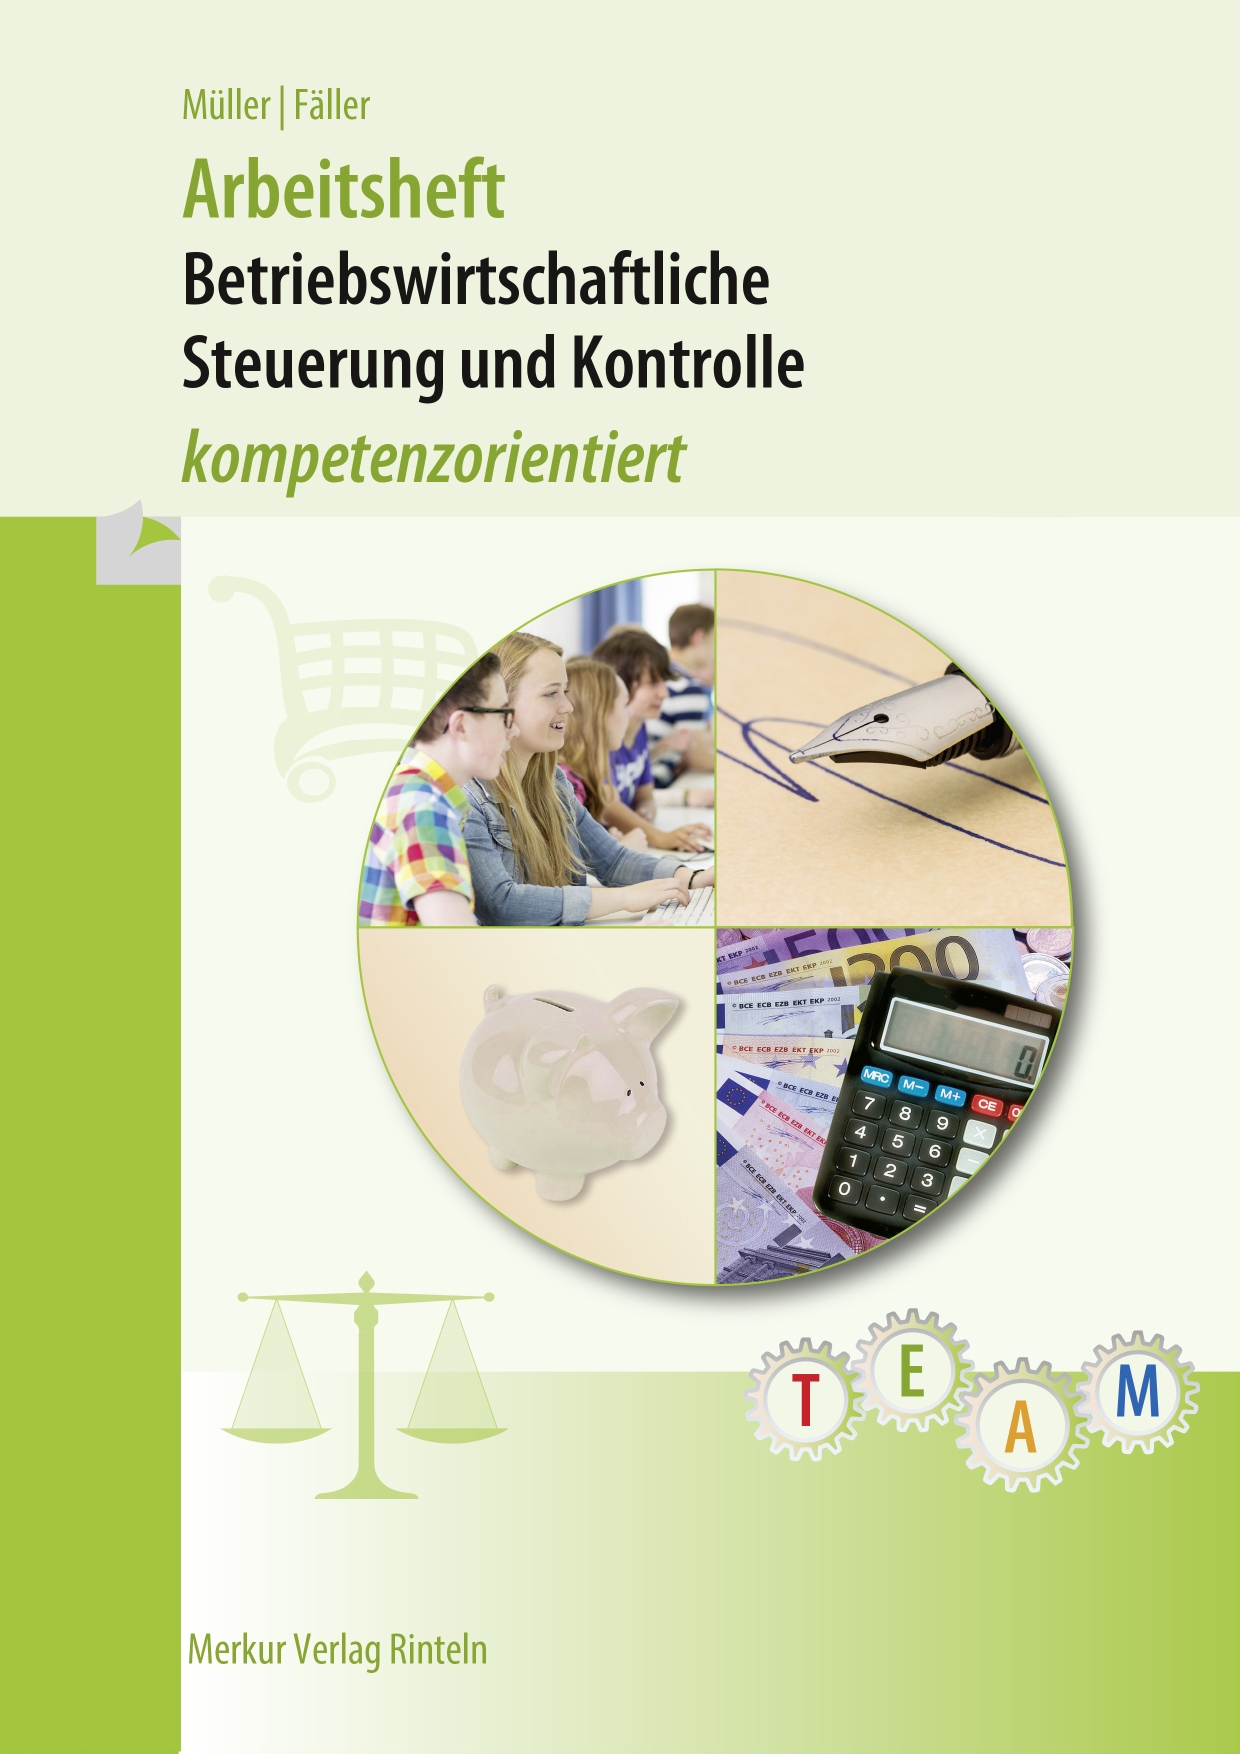 Betriebswirtschaftliche Steuerung und Kontrolle (BSK) - kompetenzorientiert Arbeitsheft für die 7. Kl. an Wirtschaftsschulen in Bayern